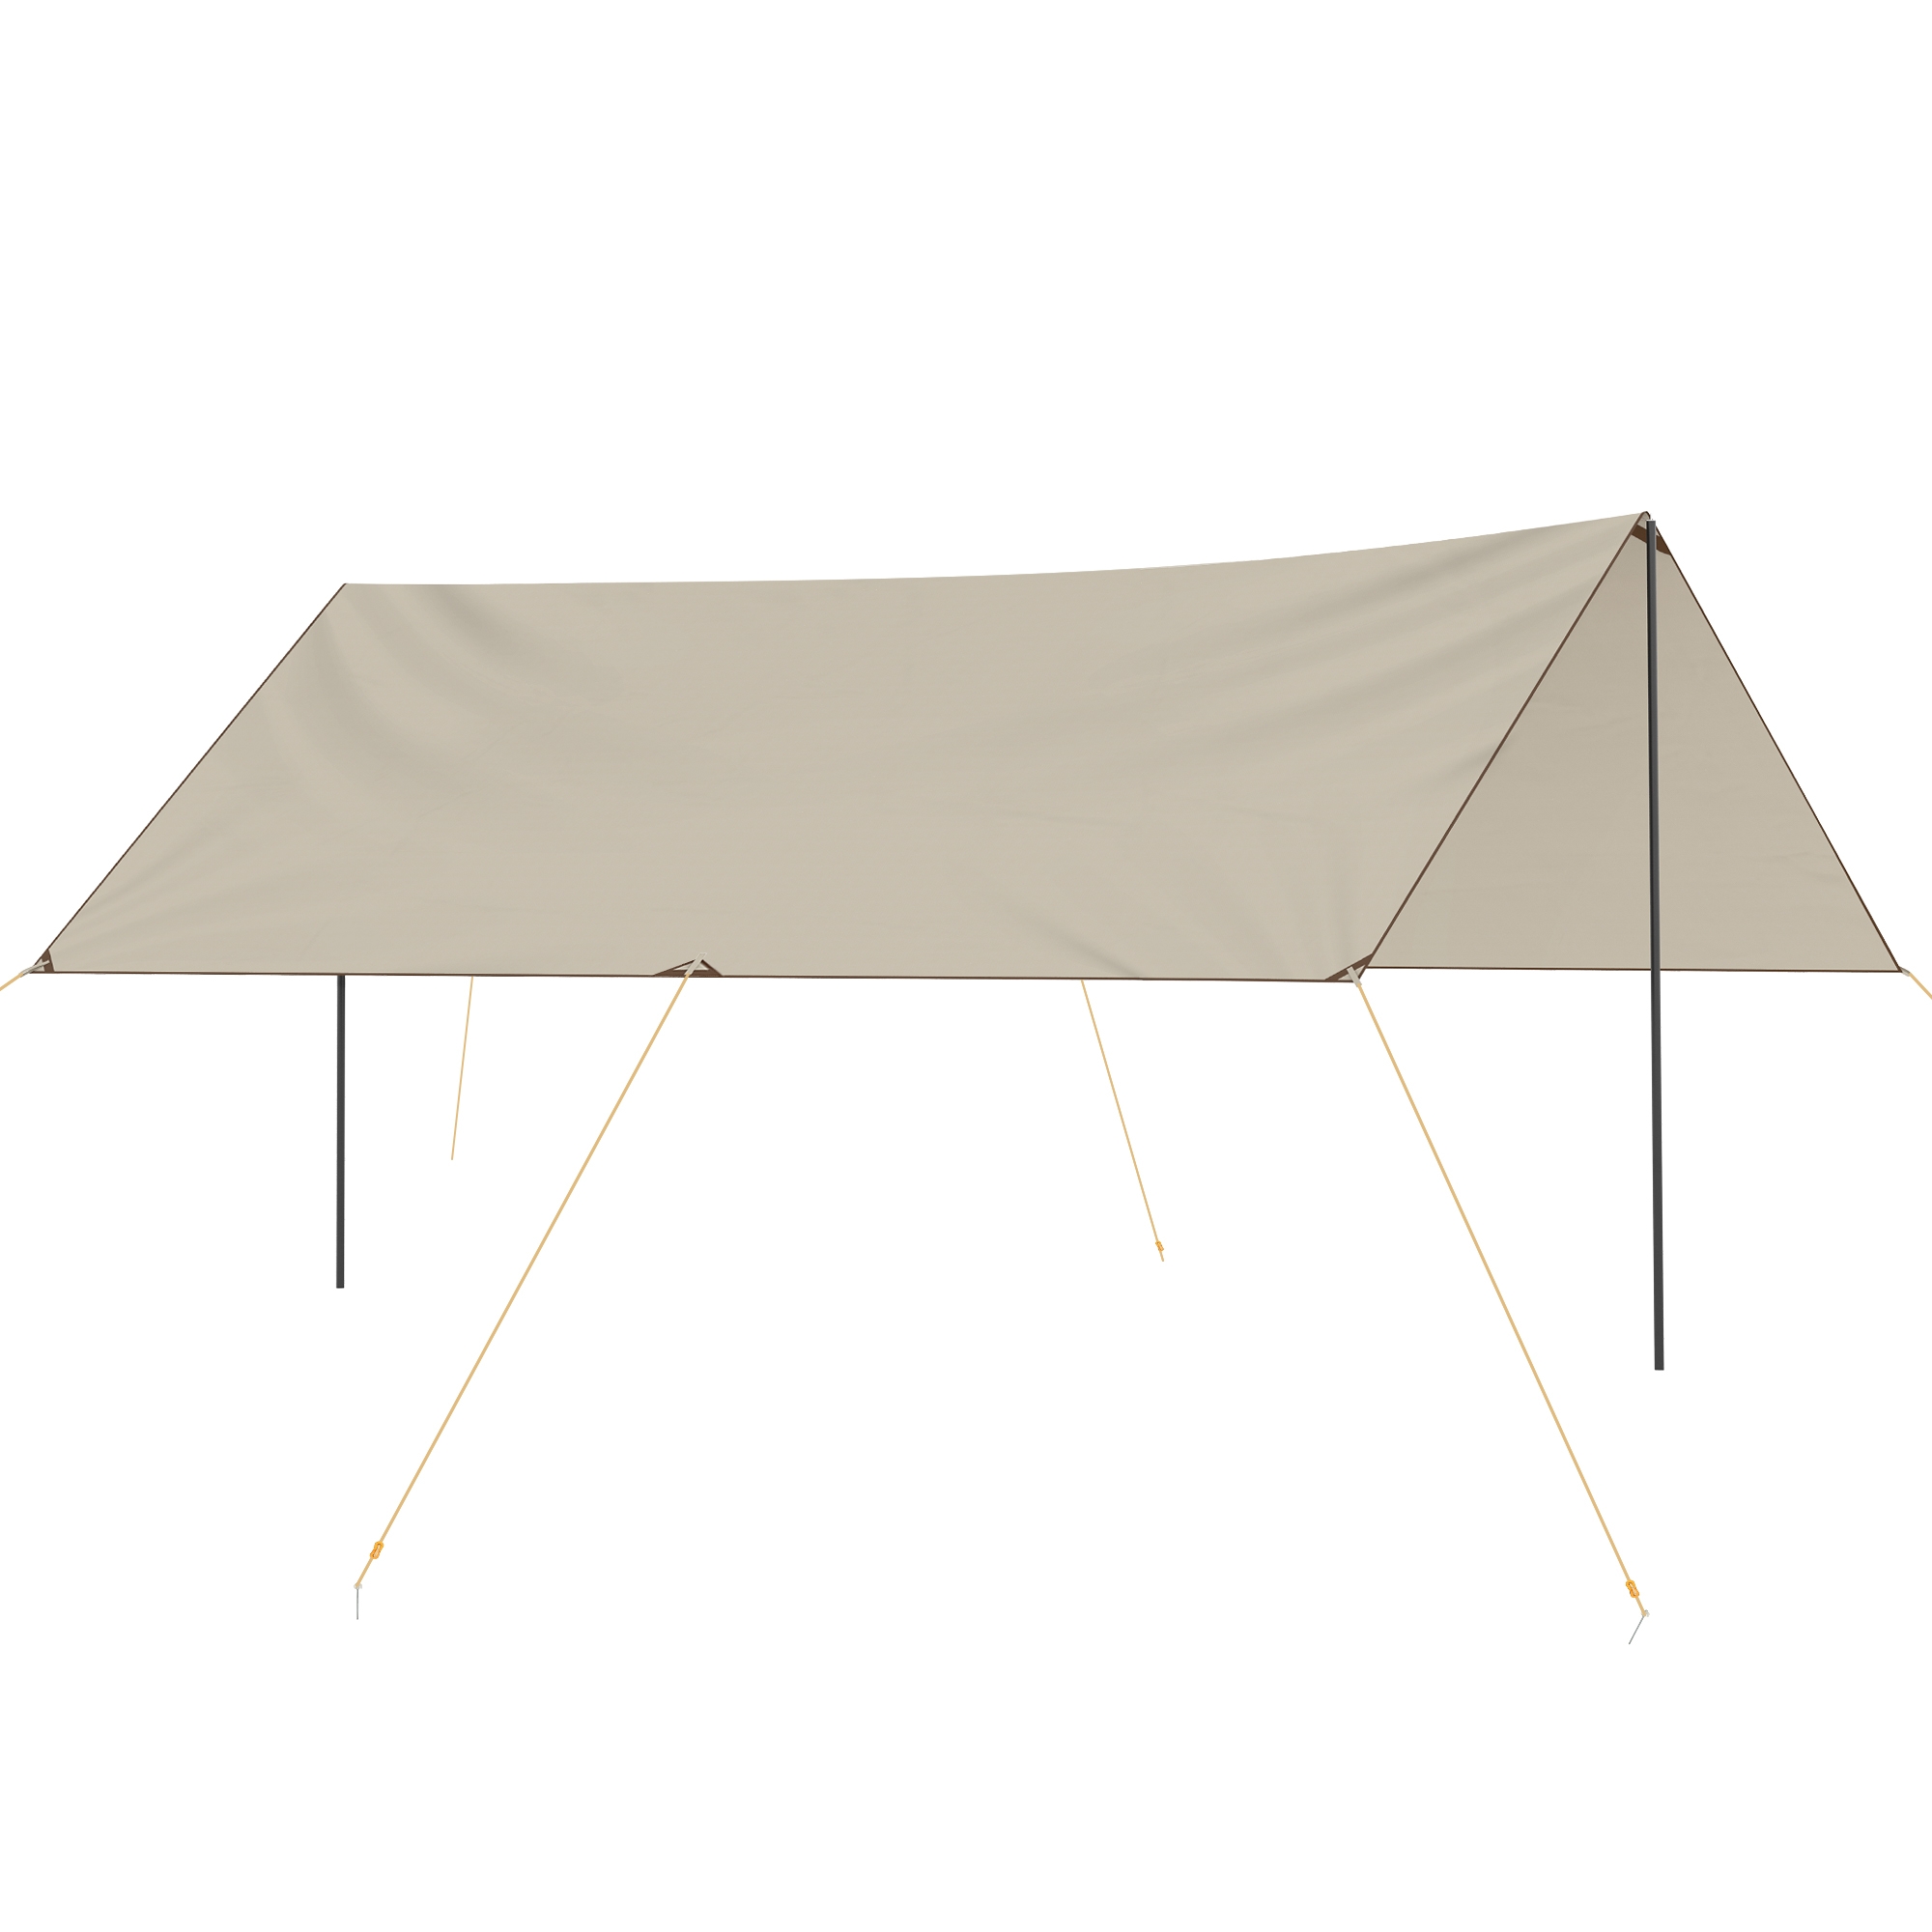 Outsunny Tenda Parasole Da Campeggio In Tessuto Oxford Colore Cachi